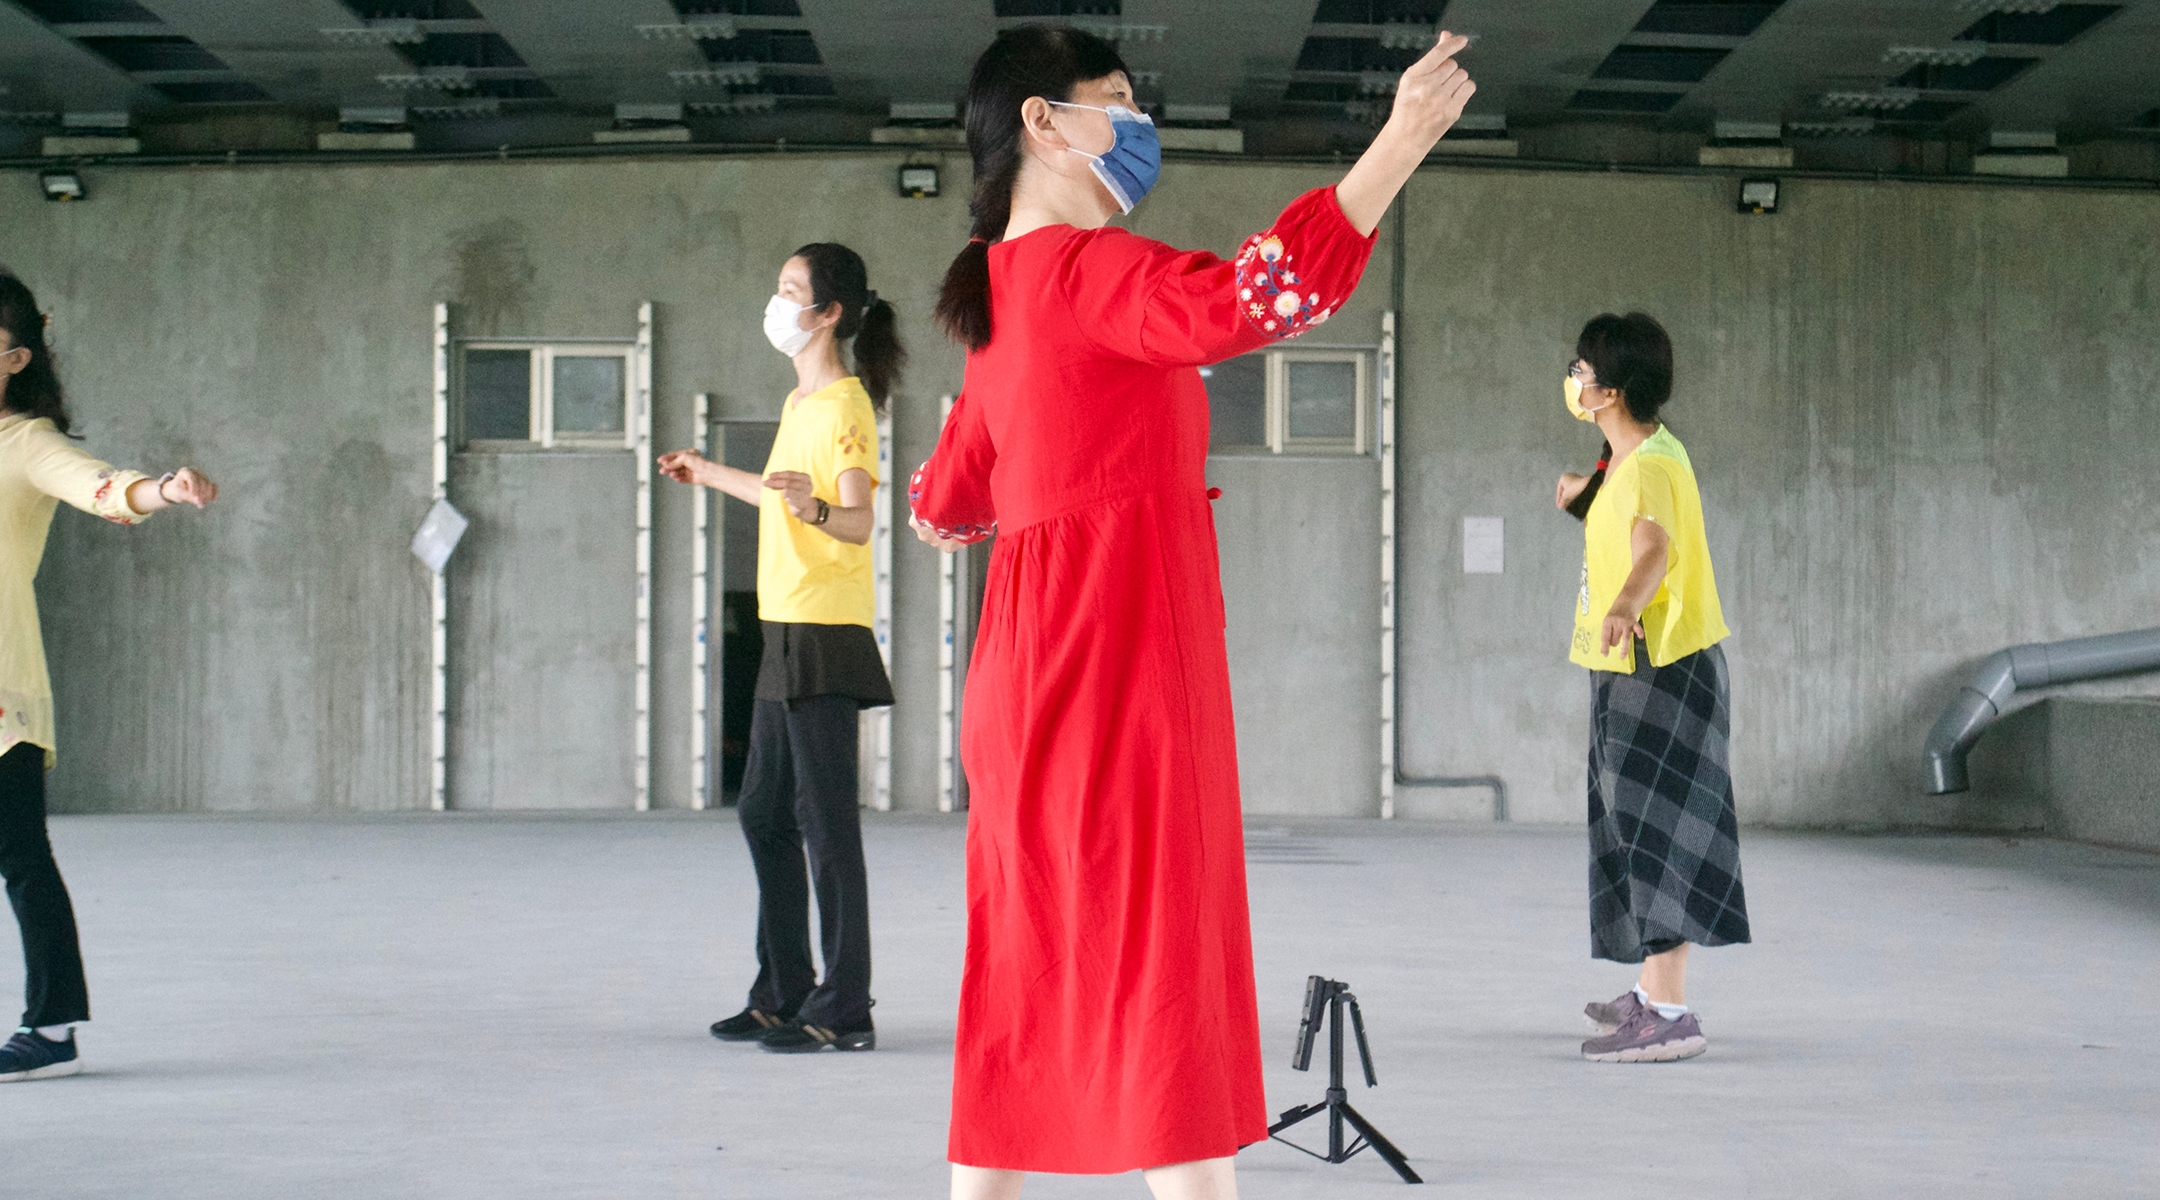 A Taiwanese dance teacher practices Israeli folk dance in Yilan, Taiwan.